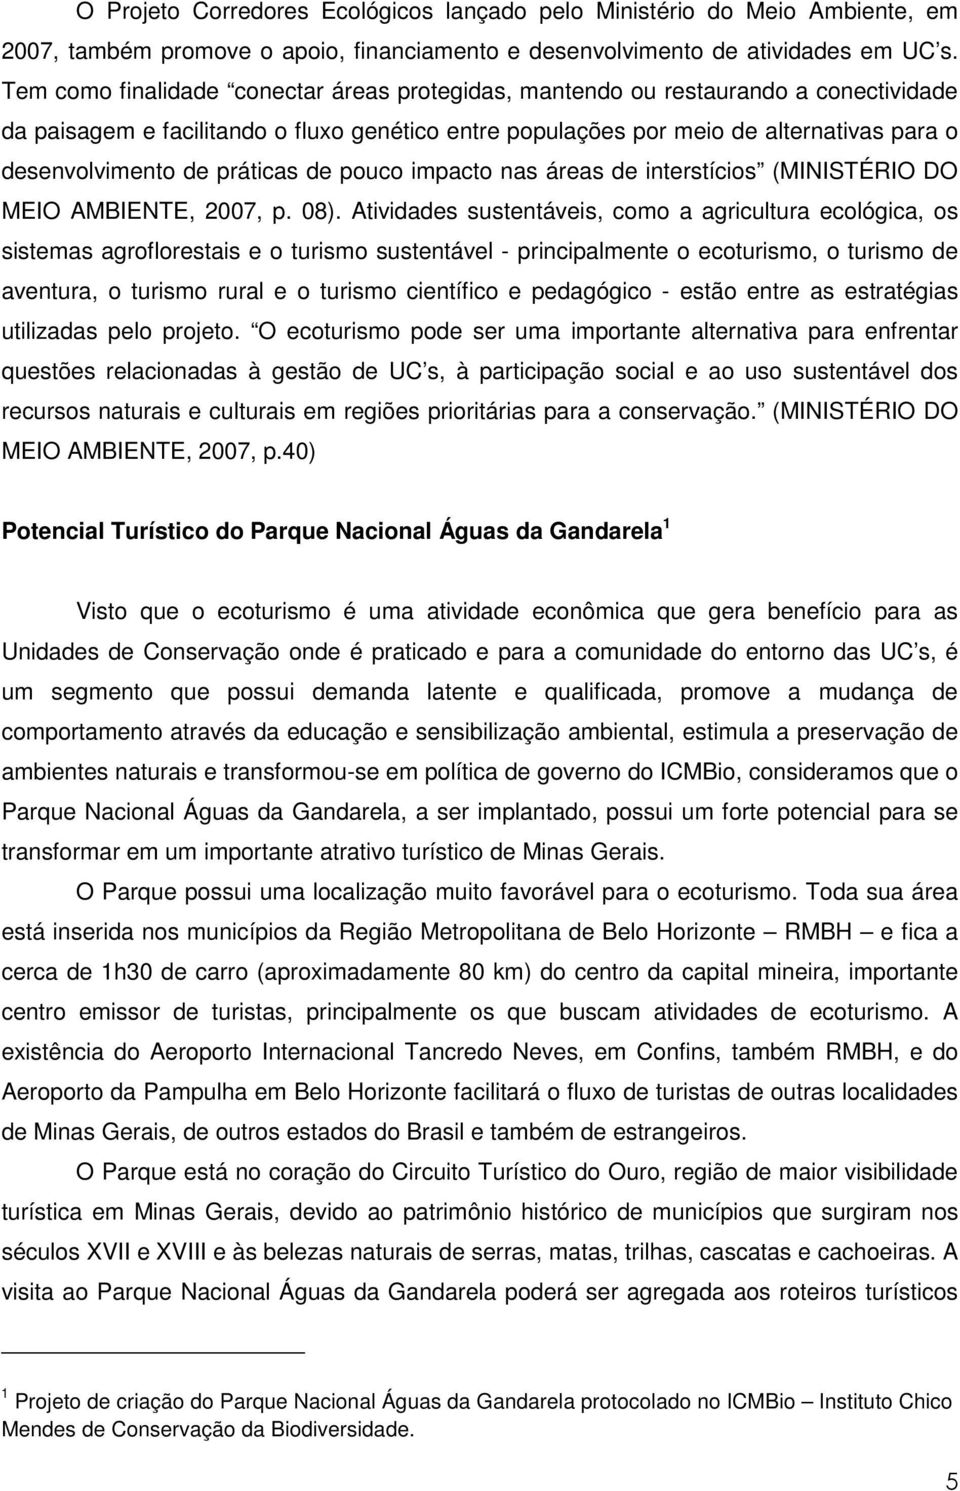 práticas de pouco impacto nas áreas de interstícios (MINISTÉRIO DO MEIO AMBIENTE, 2007, p. 08).